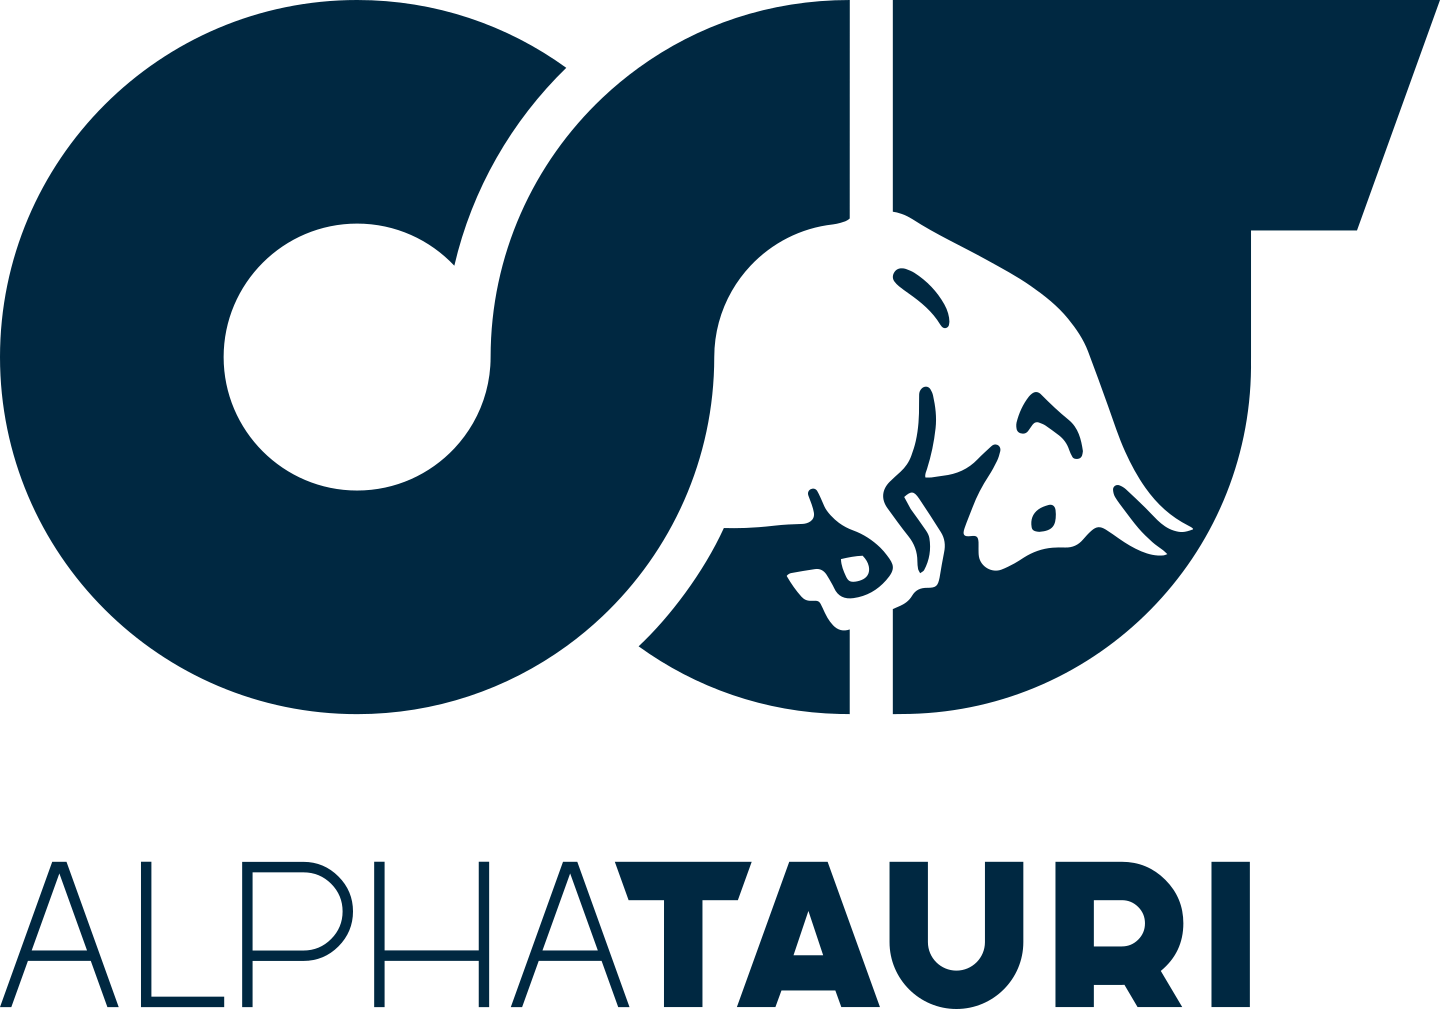 alphatauri logo 2 - Scuderia AlphaTauri Logo